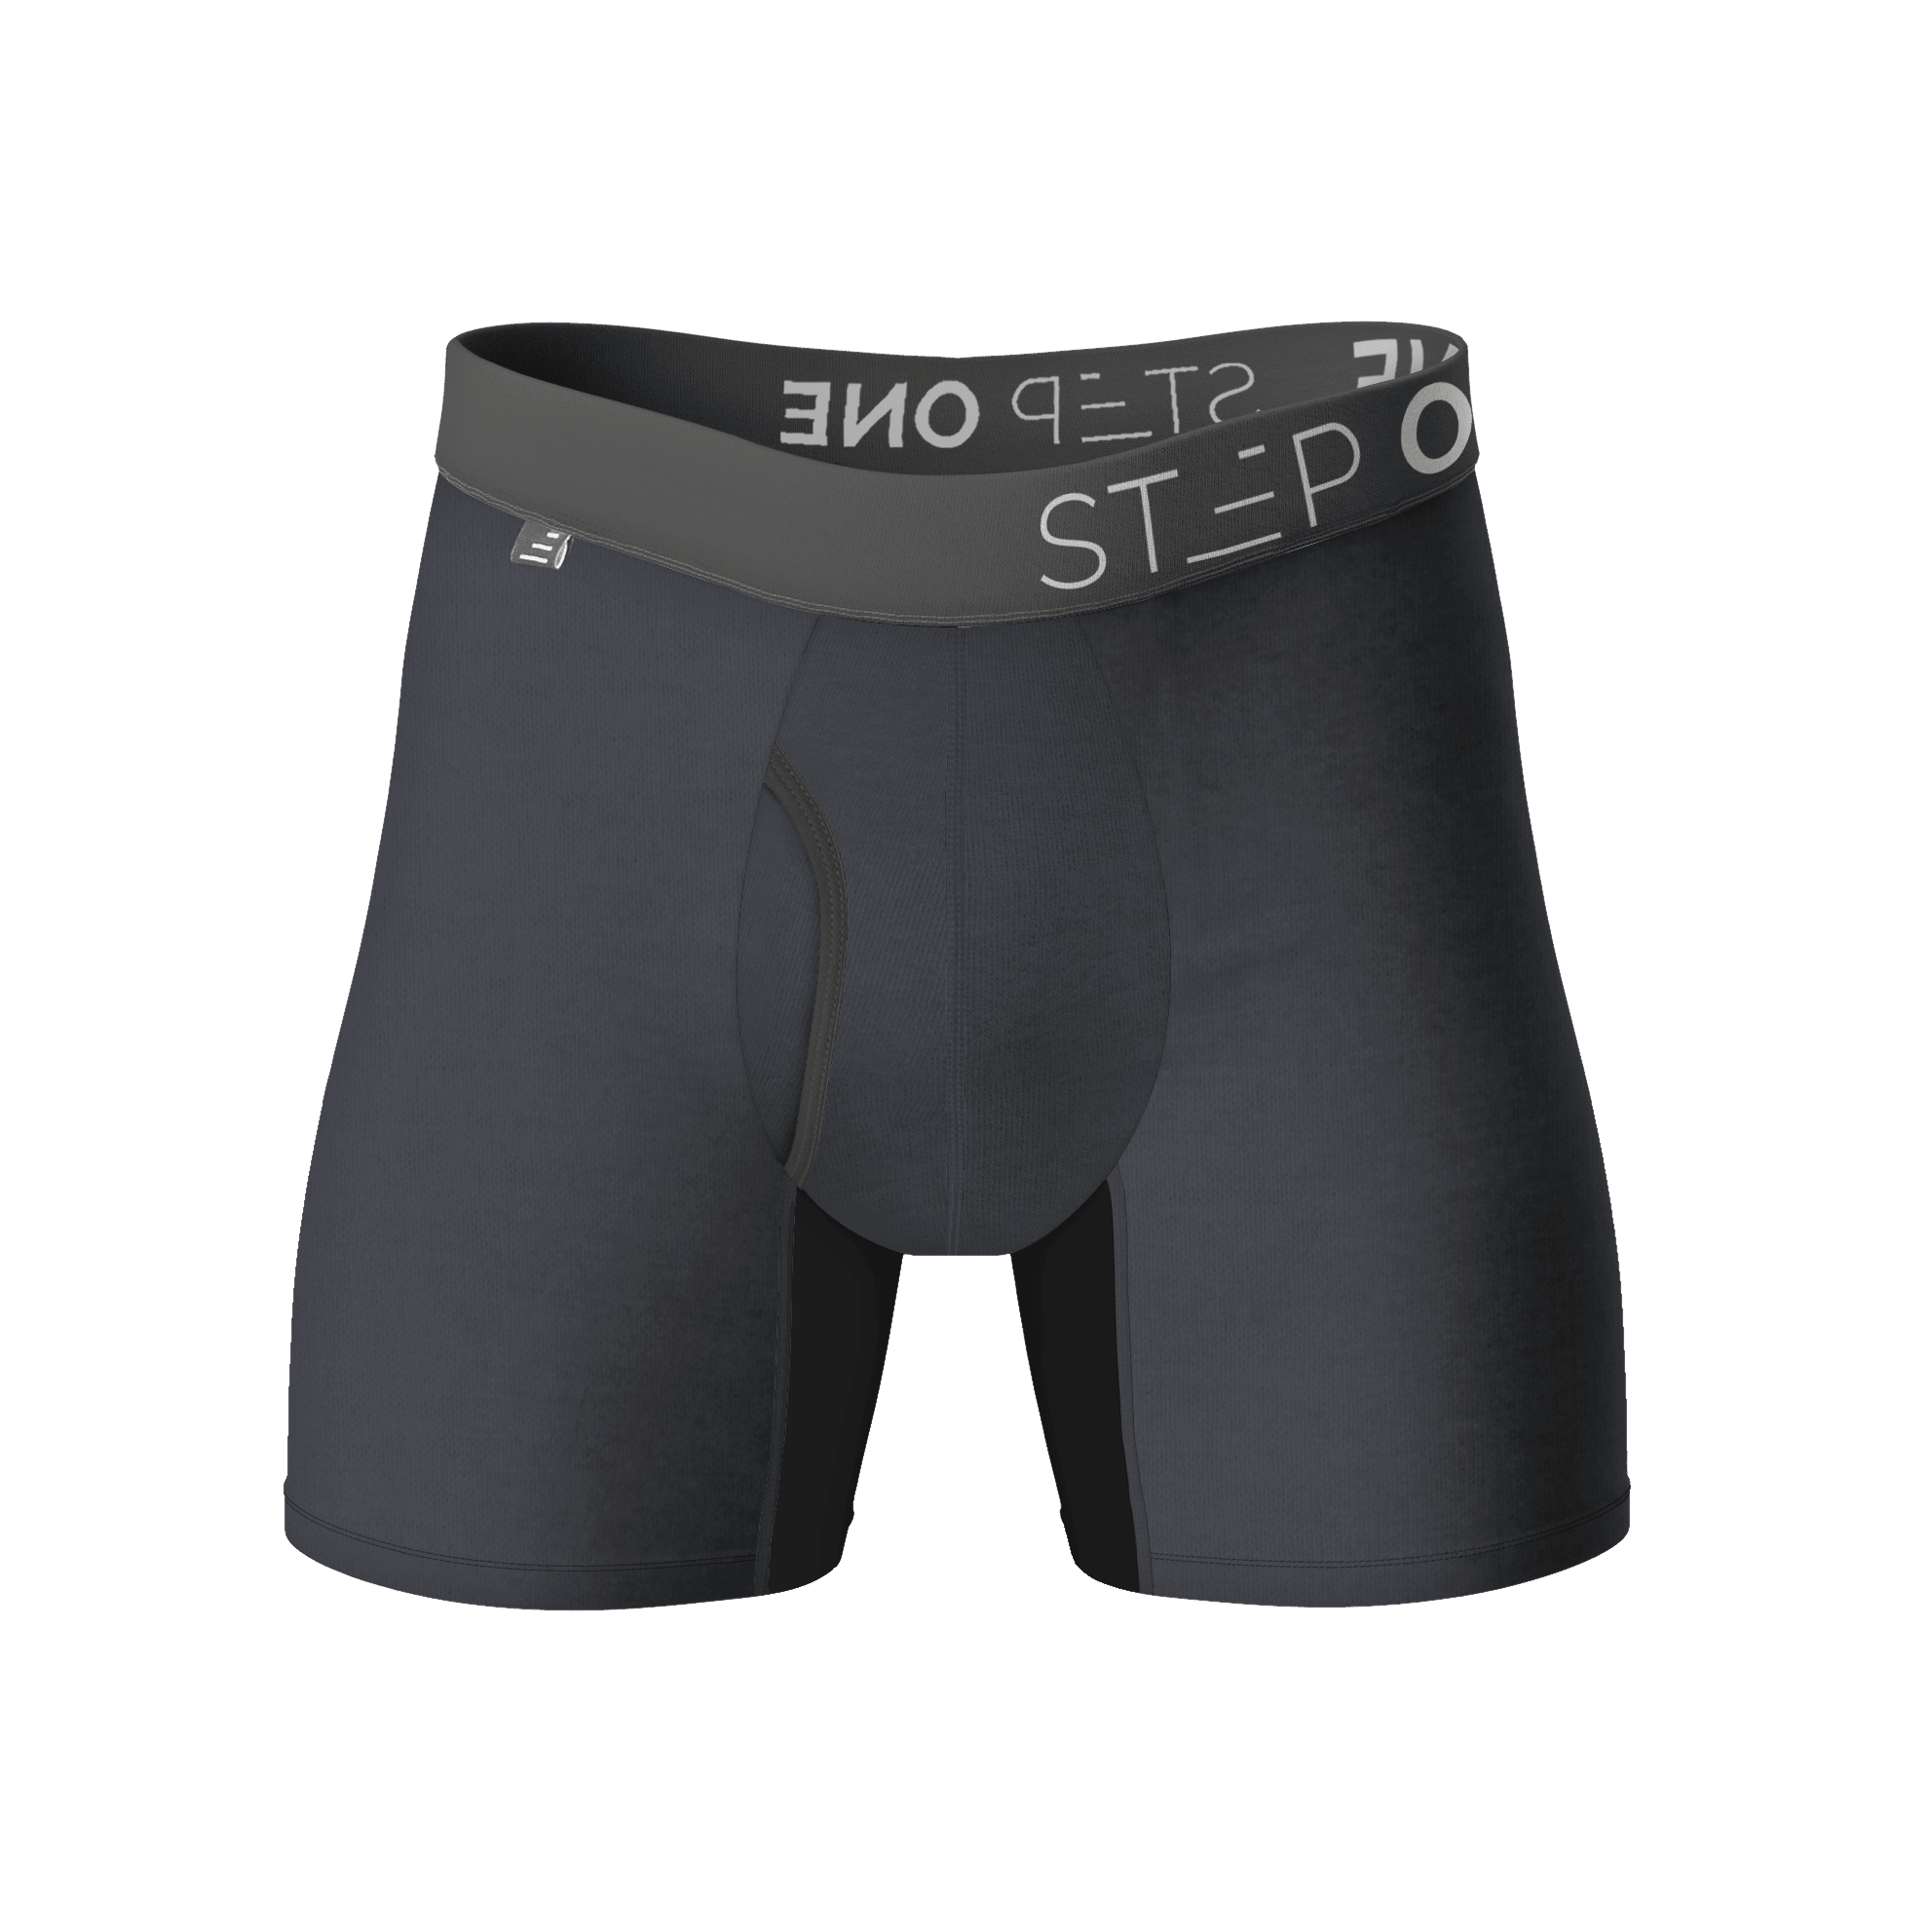 Boxer Brief Fly  Men's Underwear Step On